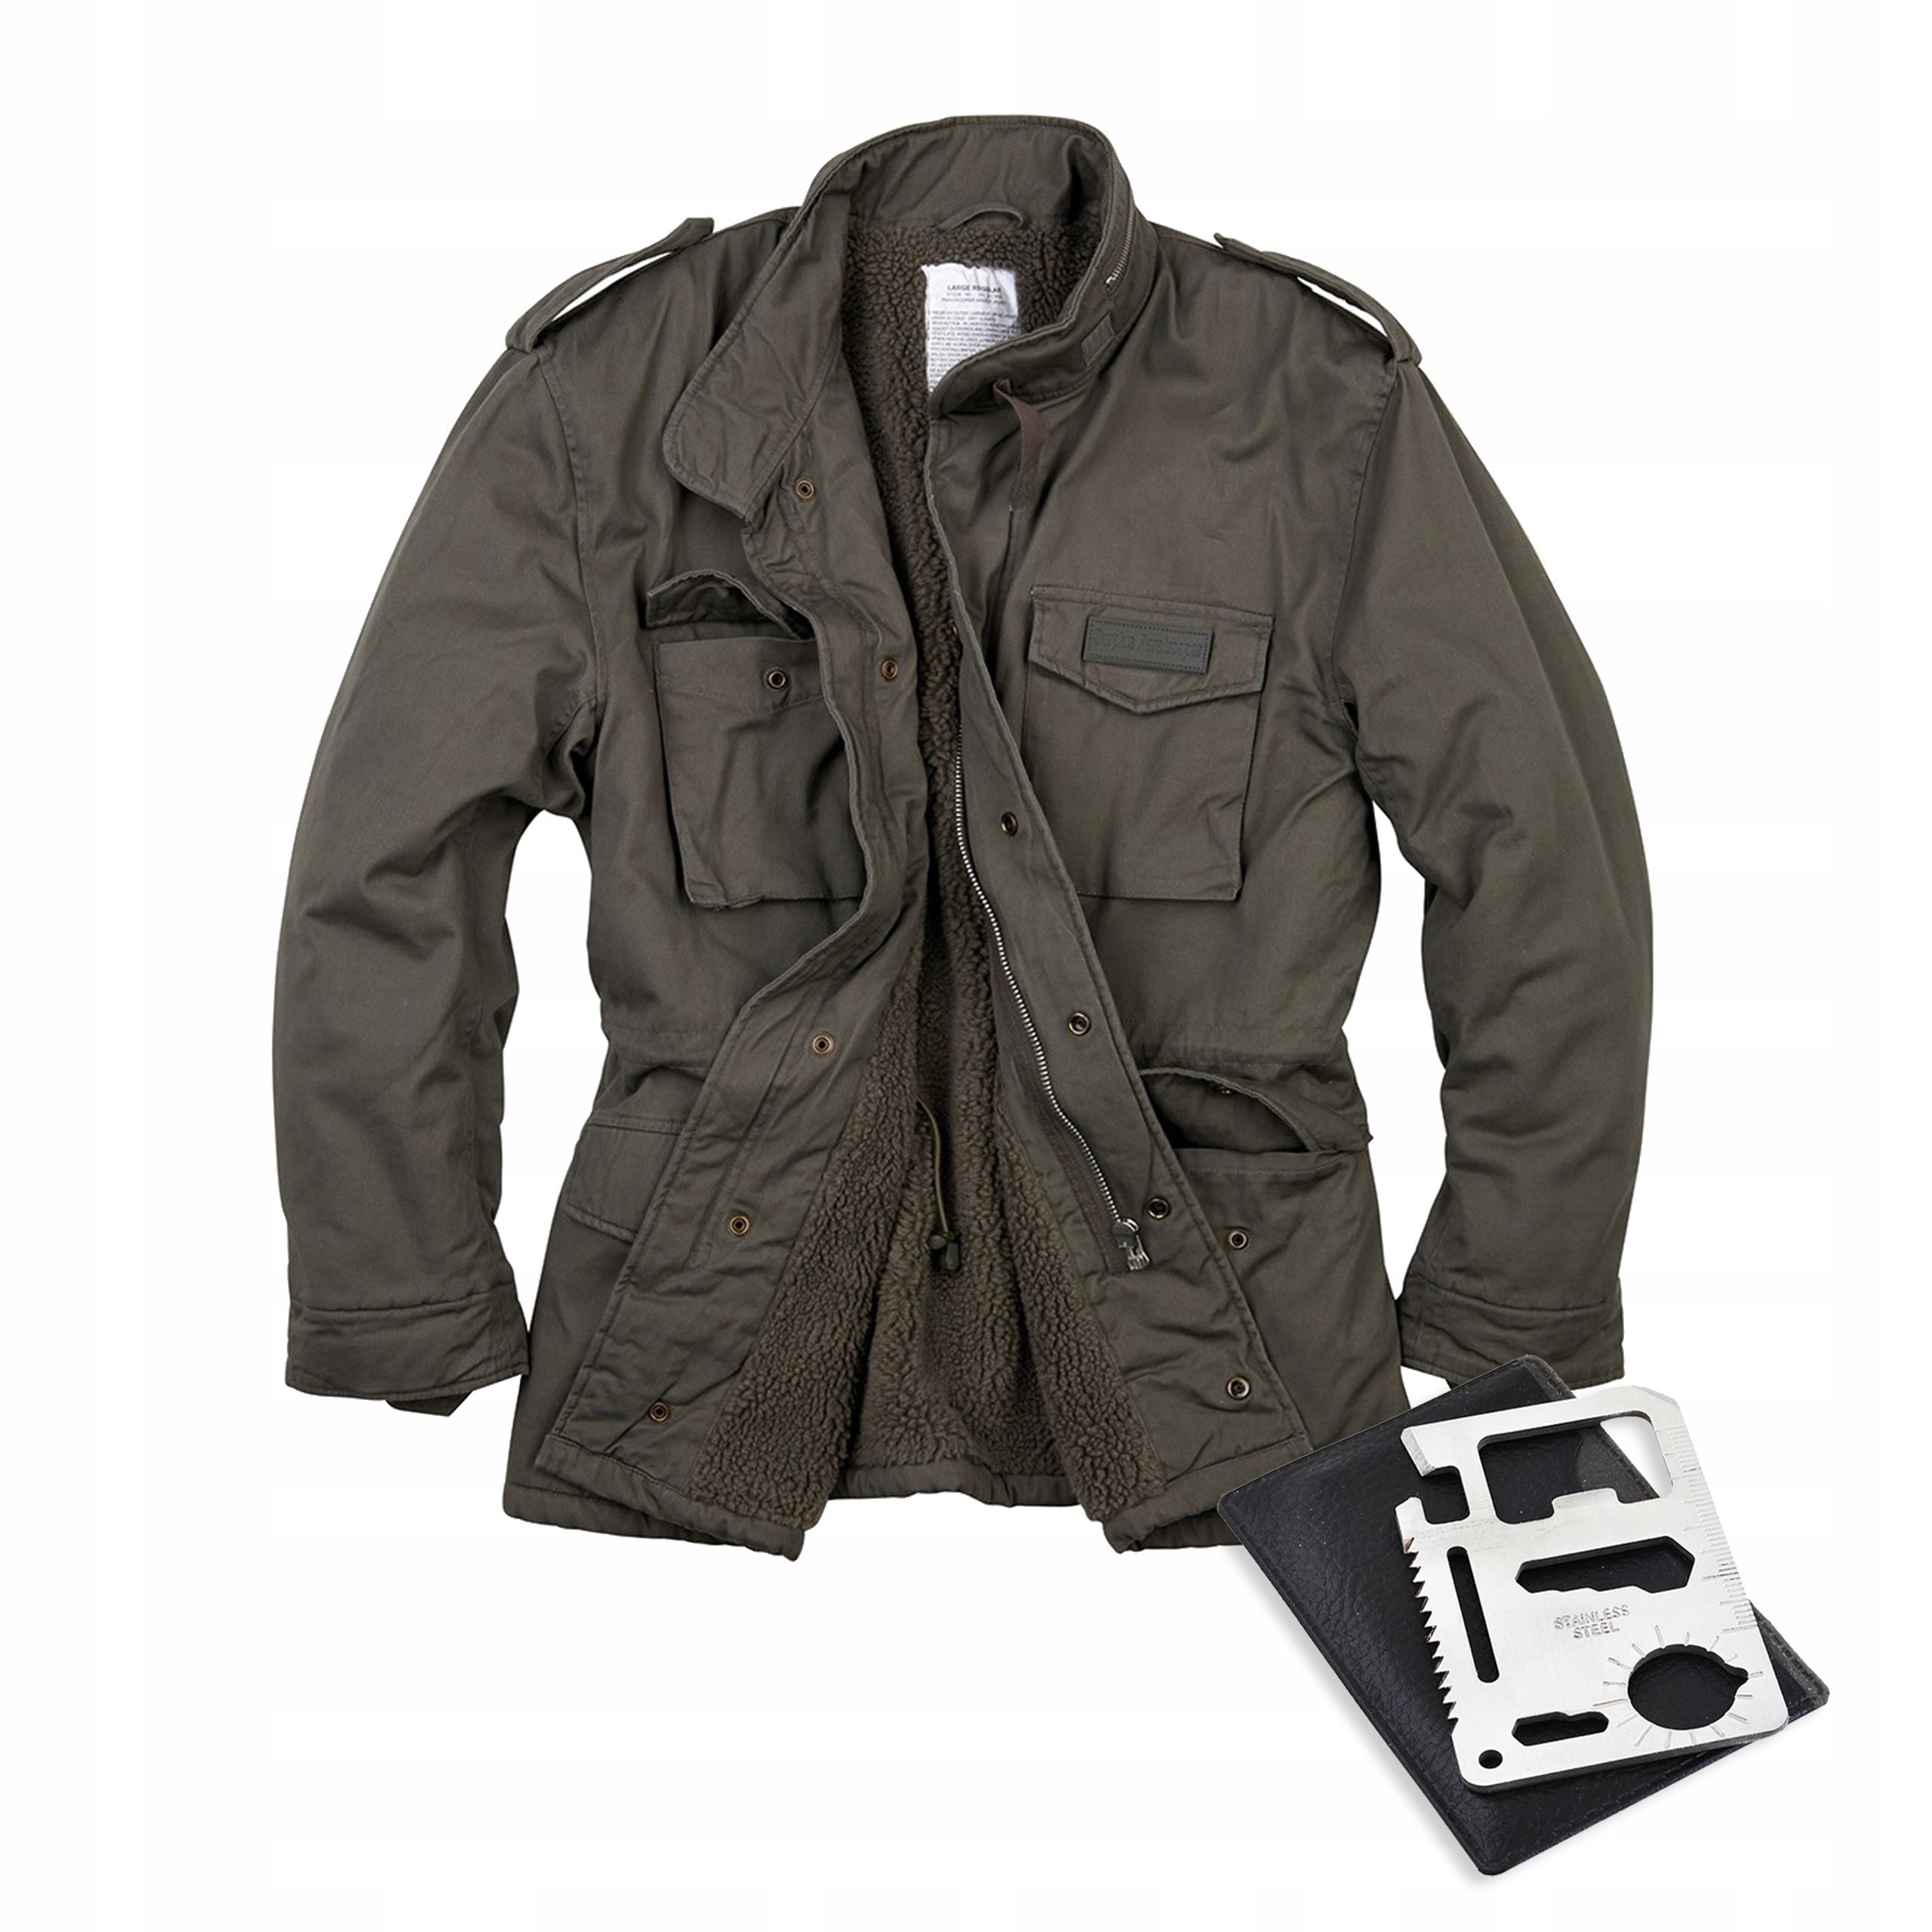 Куртка мужская 65. Куртка Surplus Airborne Jacket. M-65 Classic Brandit. Куртка m-65 Surplus. Куртка Paratrooper Winter (Surplus).